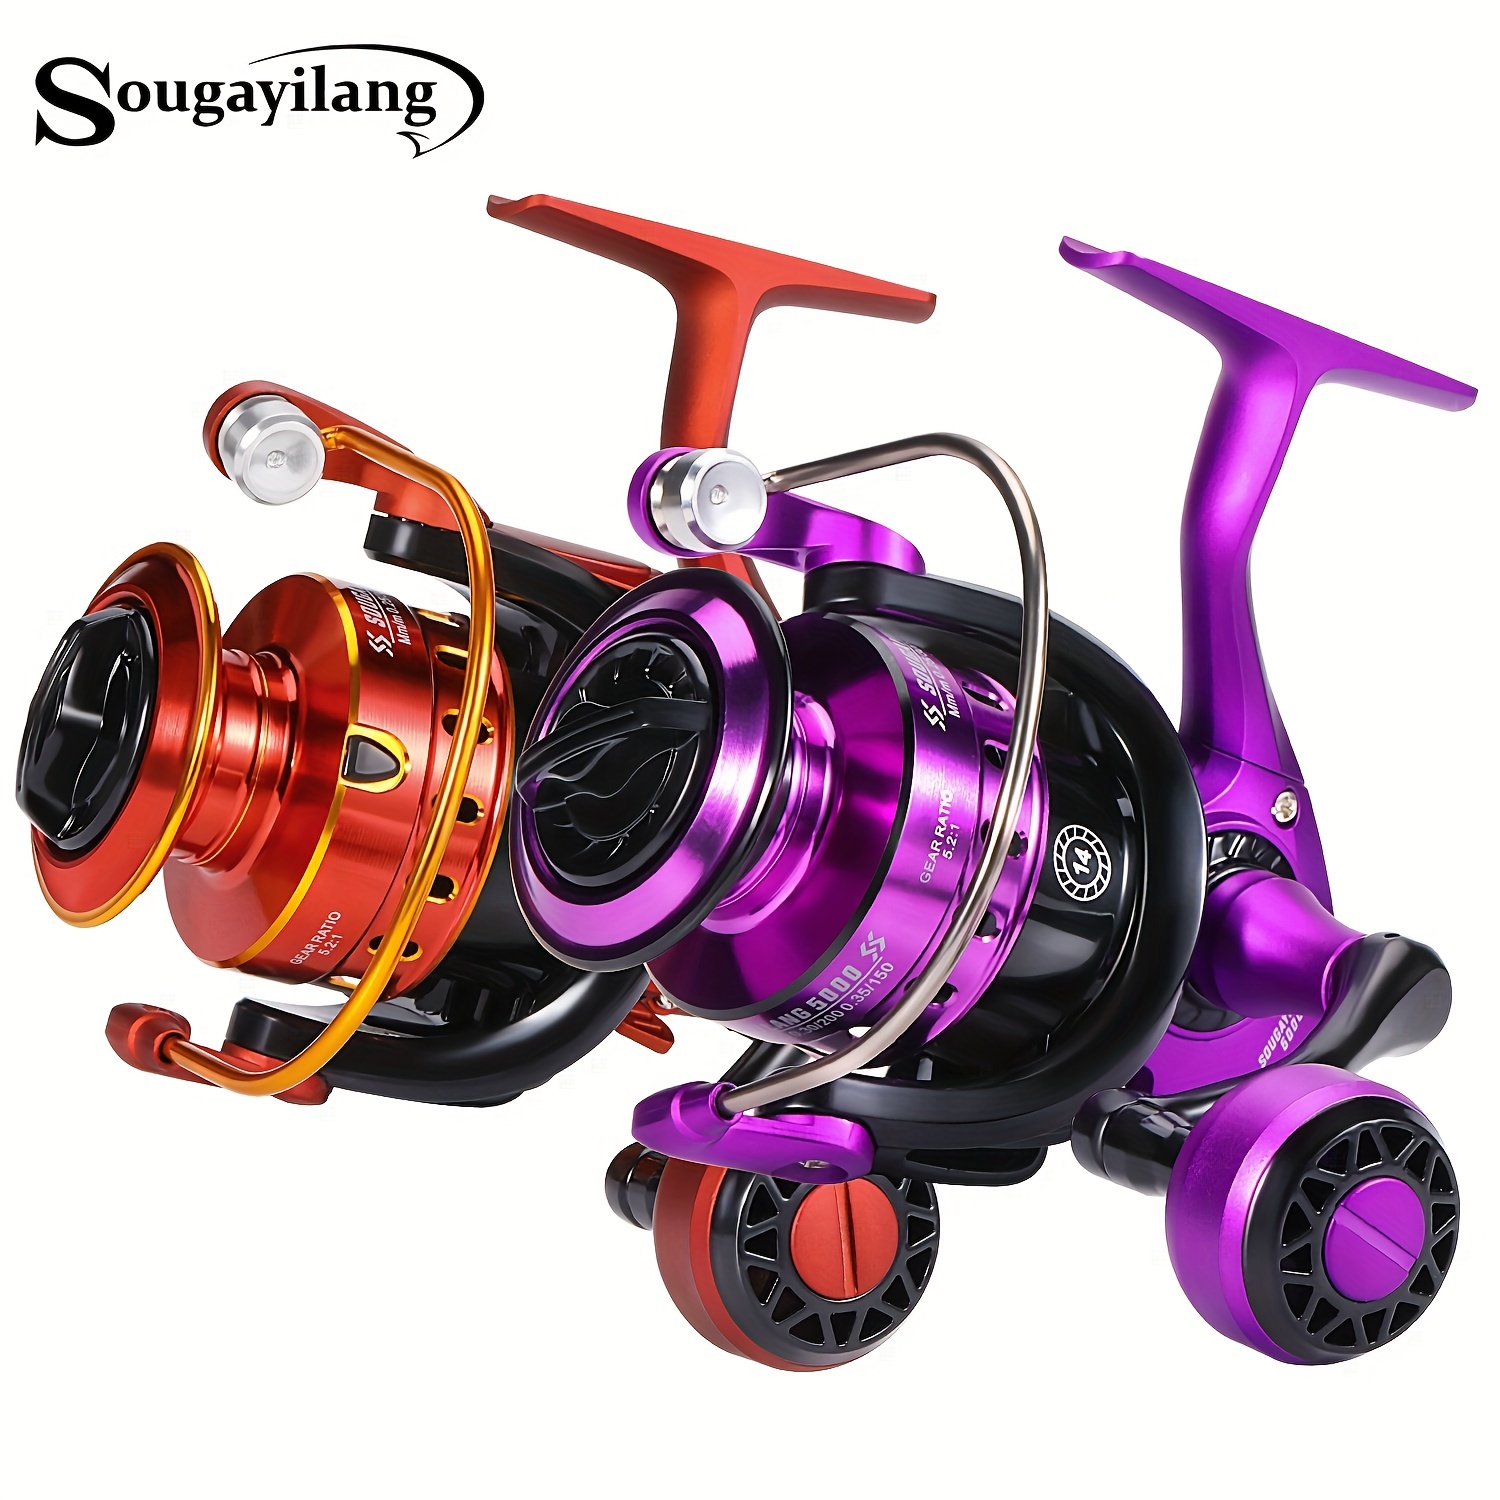  Sougayilang Spinning Fishing Reel, 5.2:1 High Speed